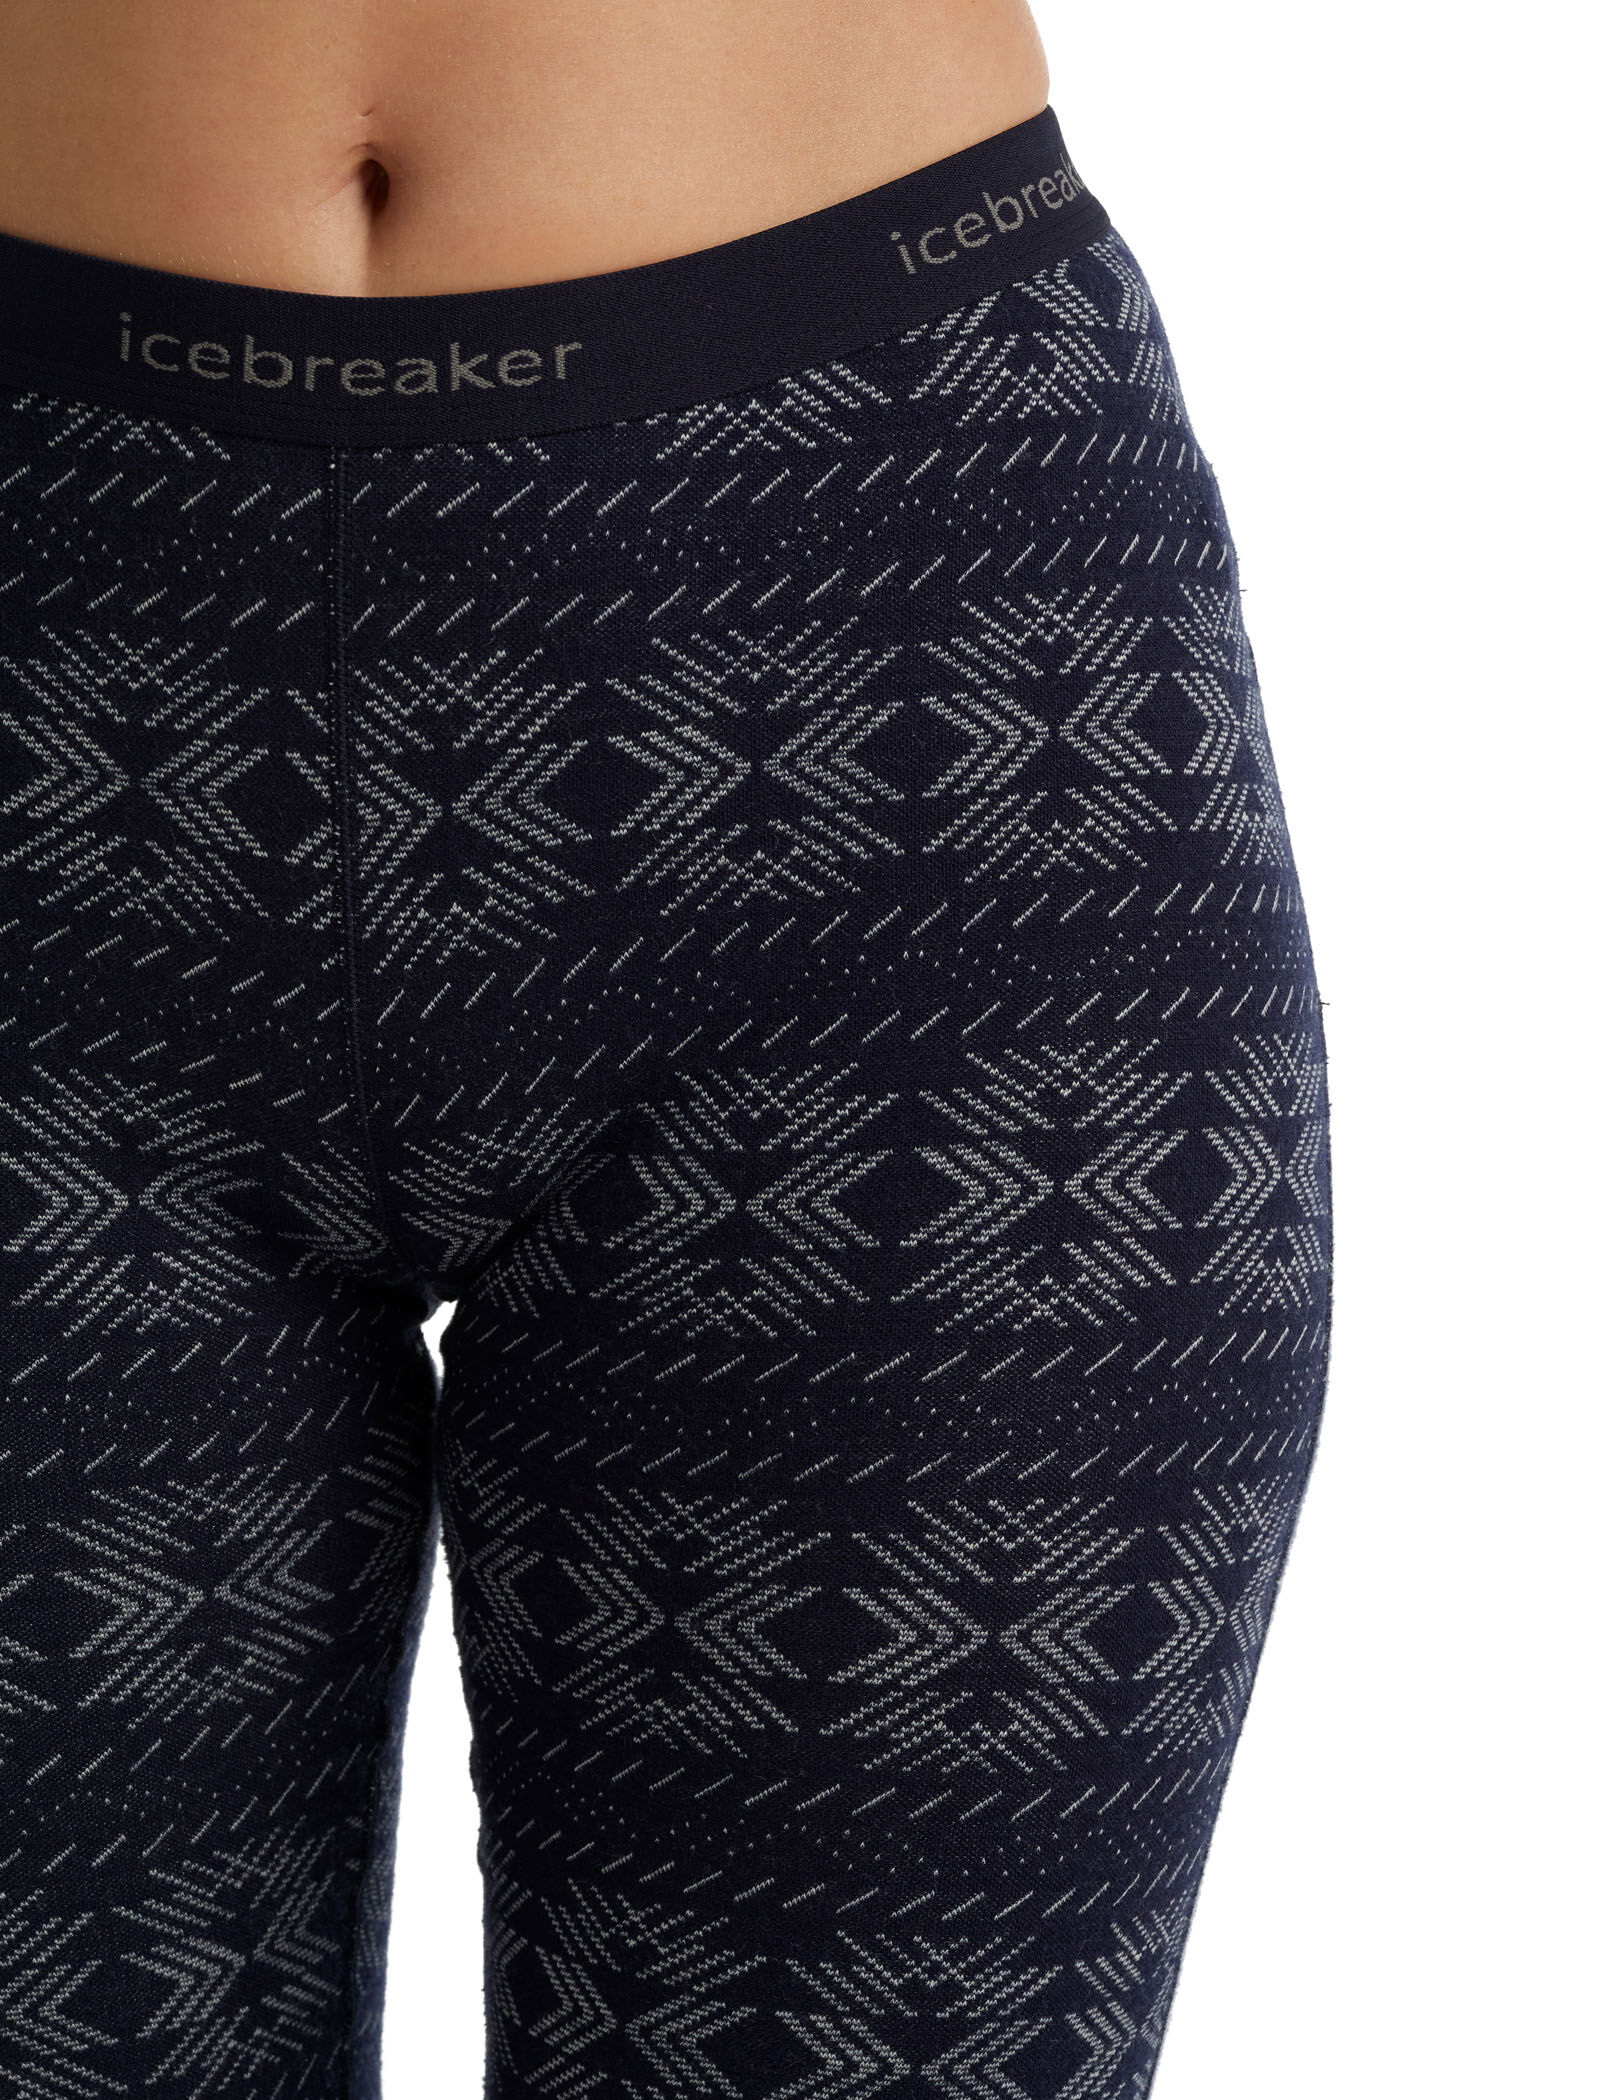 Icebreaker Vertex Technical Underwear Ladies Leggings Black